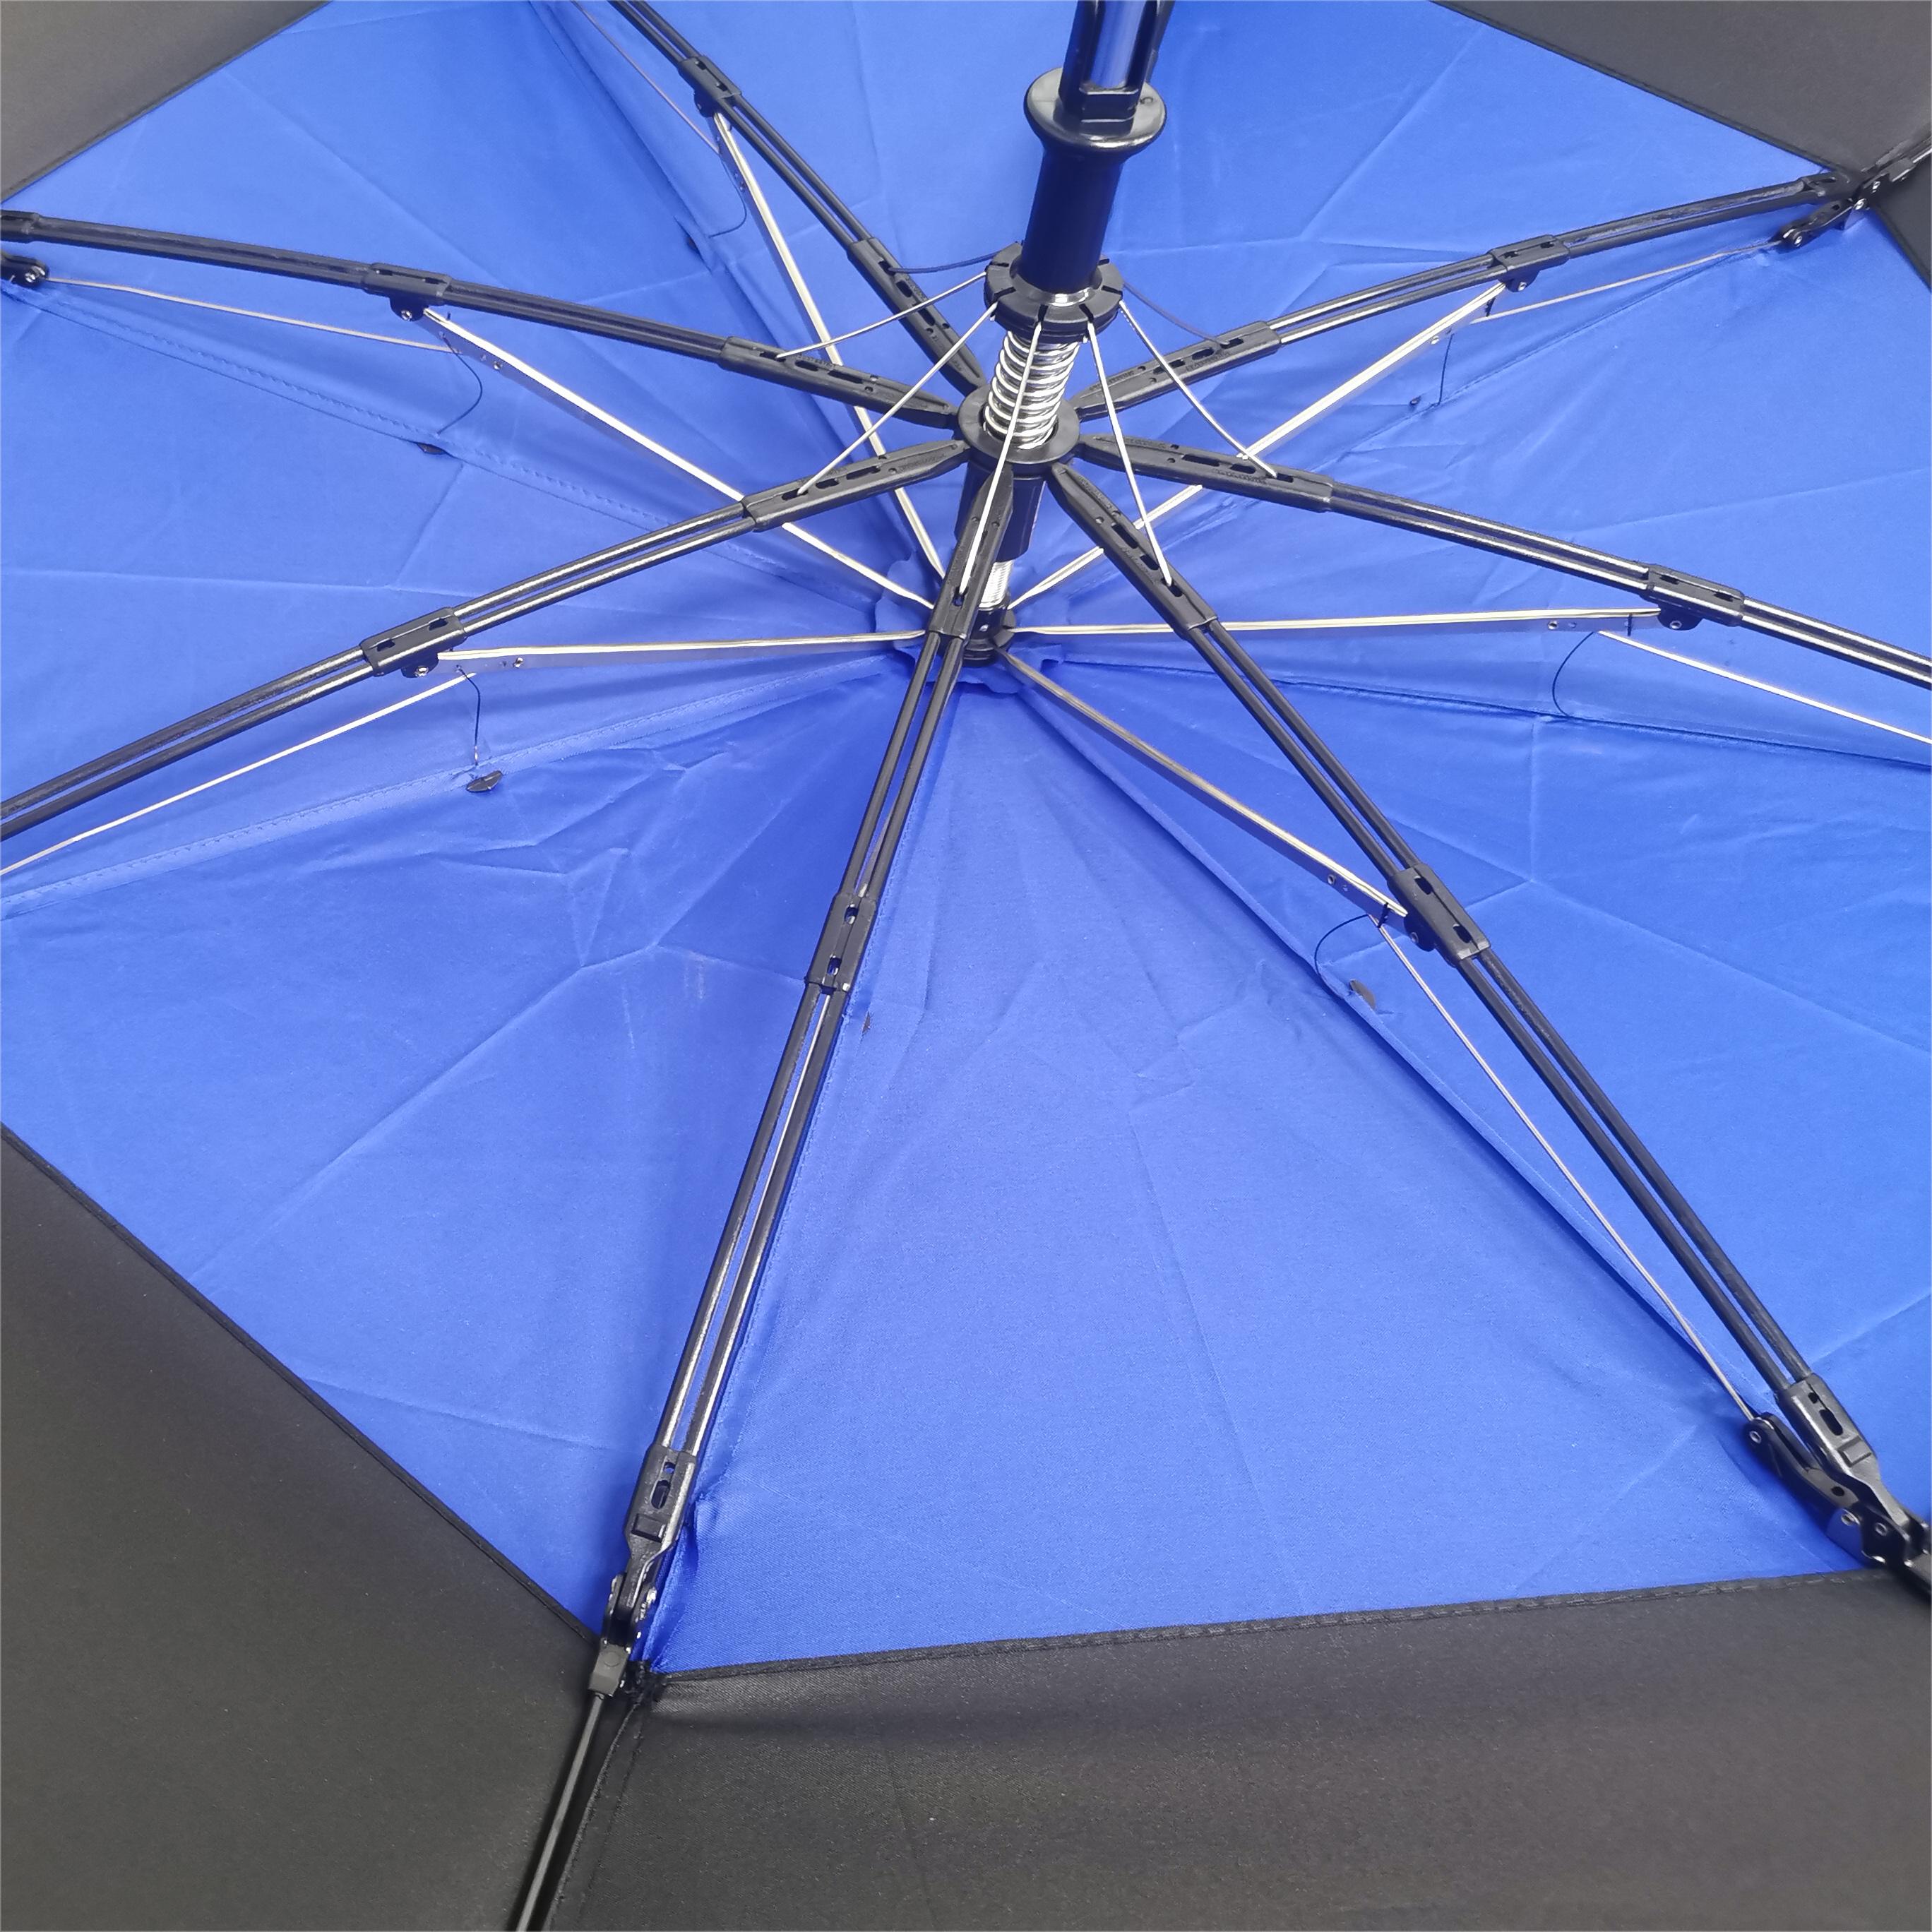 https://www.hodaumbrella.com/double-layers-…lding-umbrella-product/